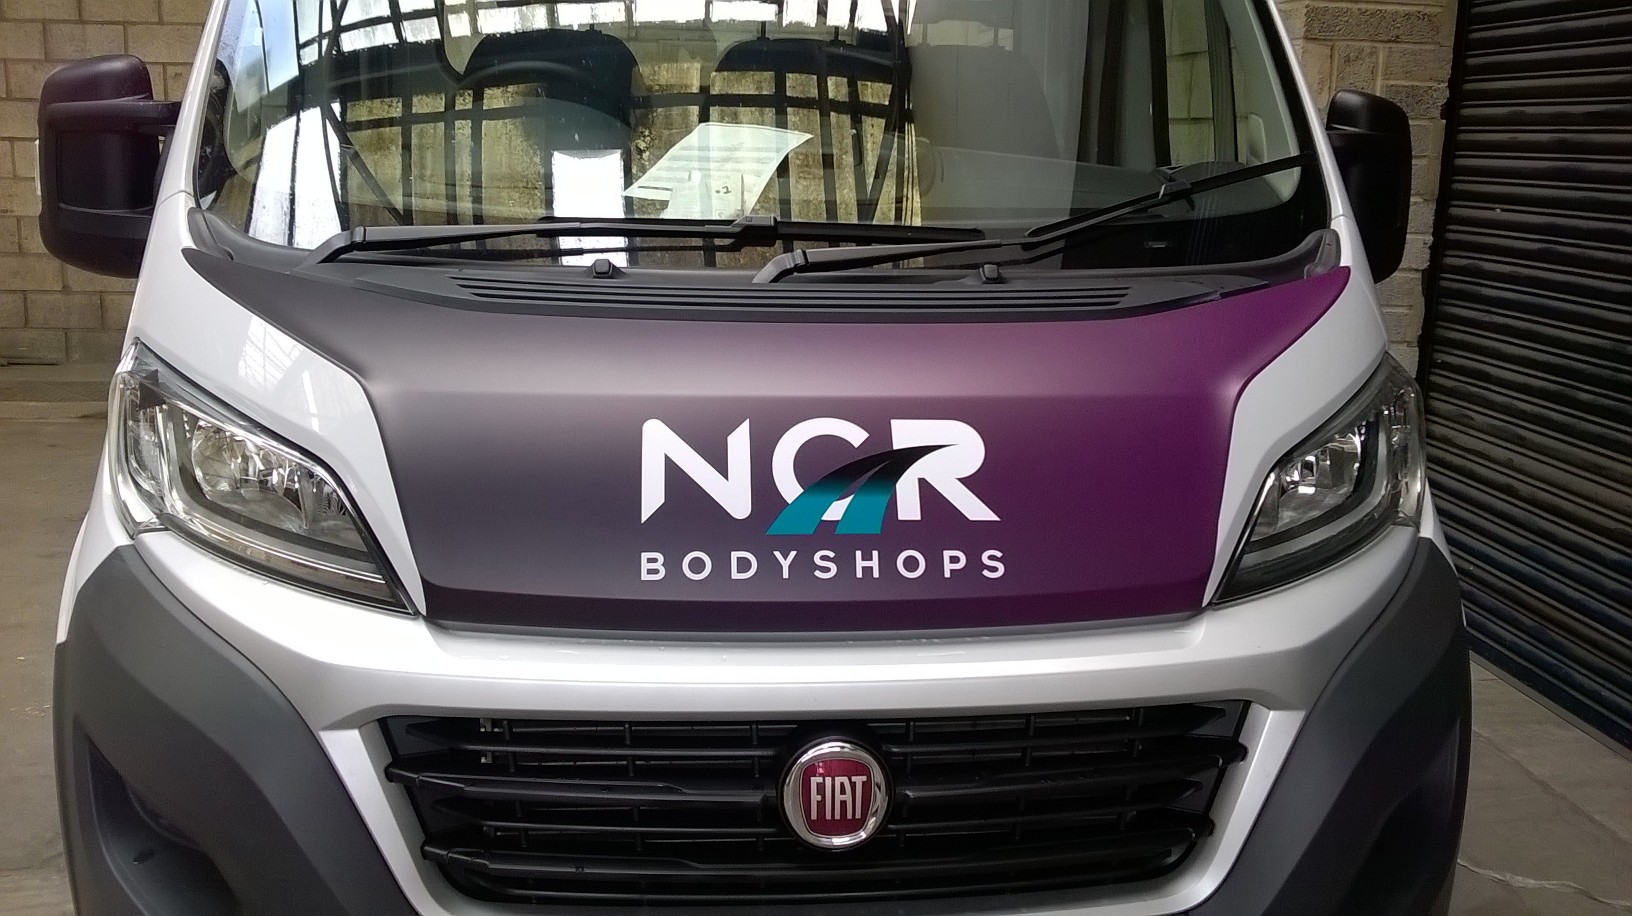 Vehicle Signage for NCR Bodyshops